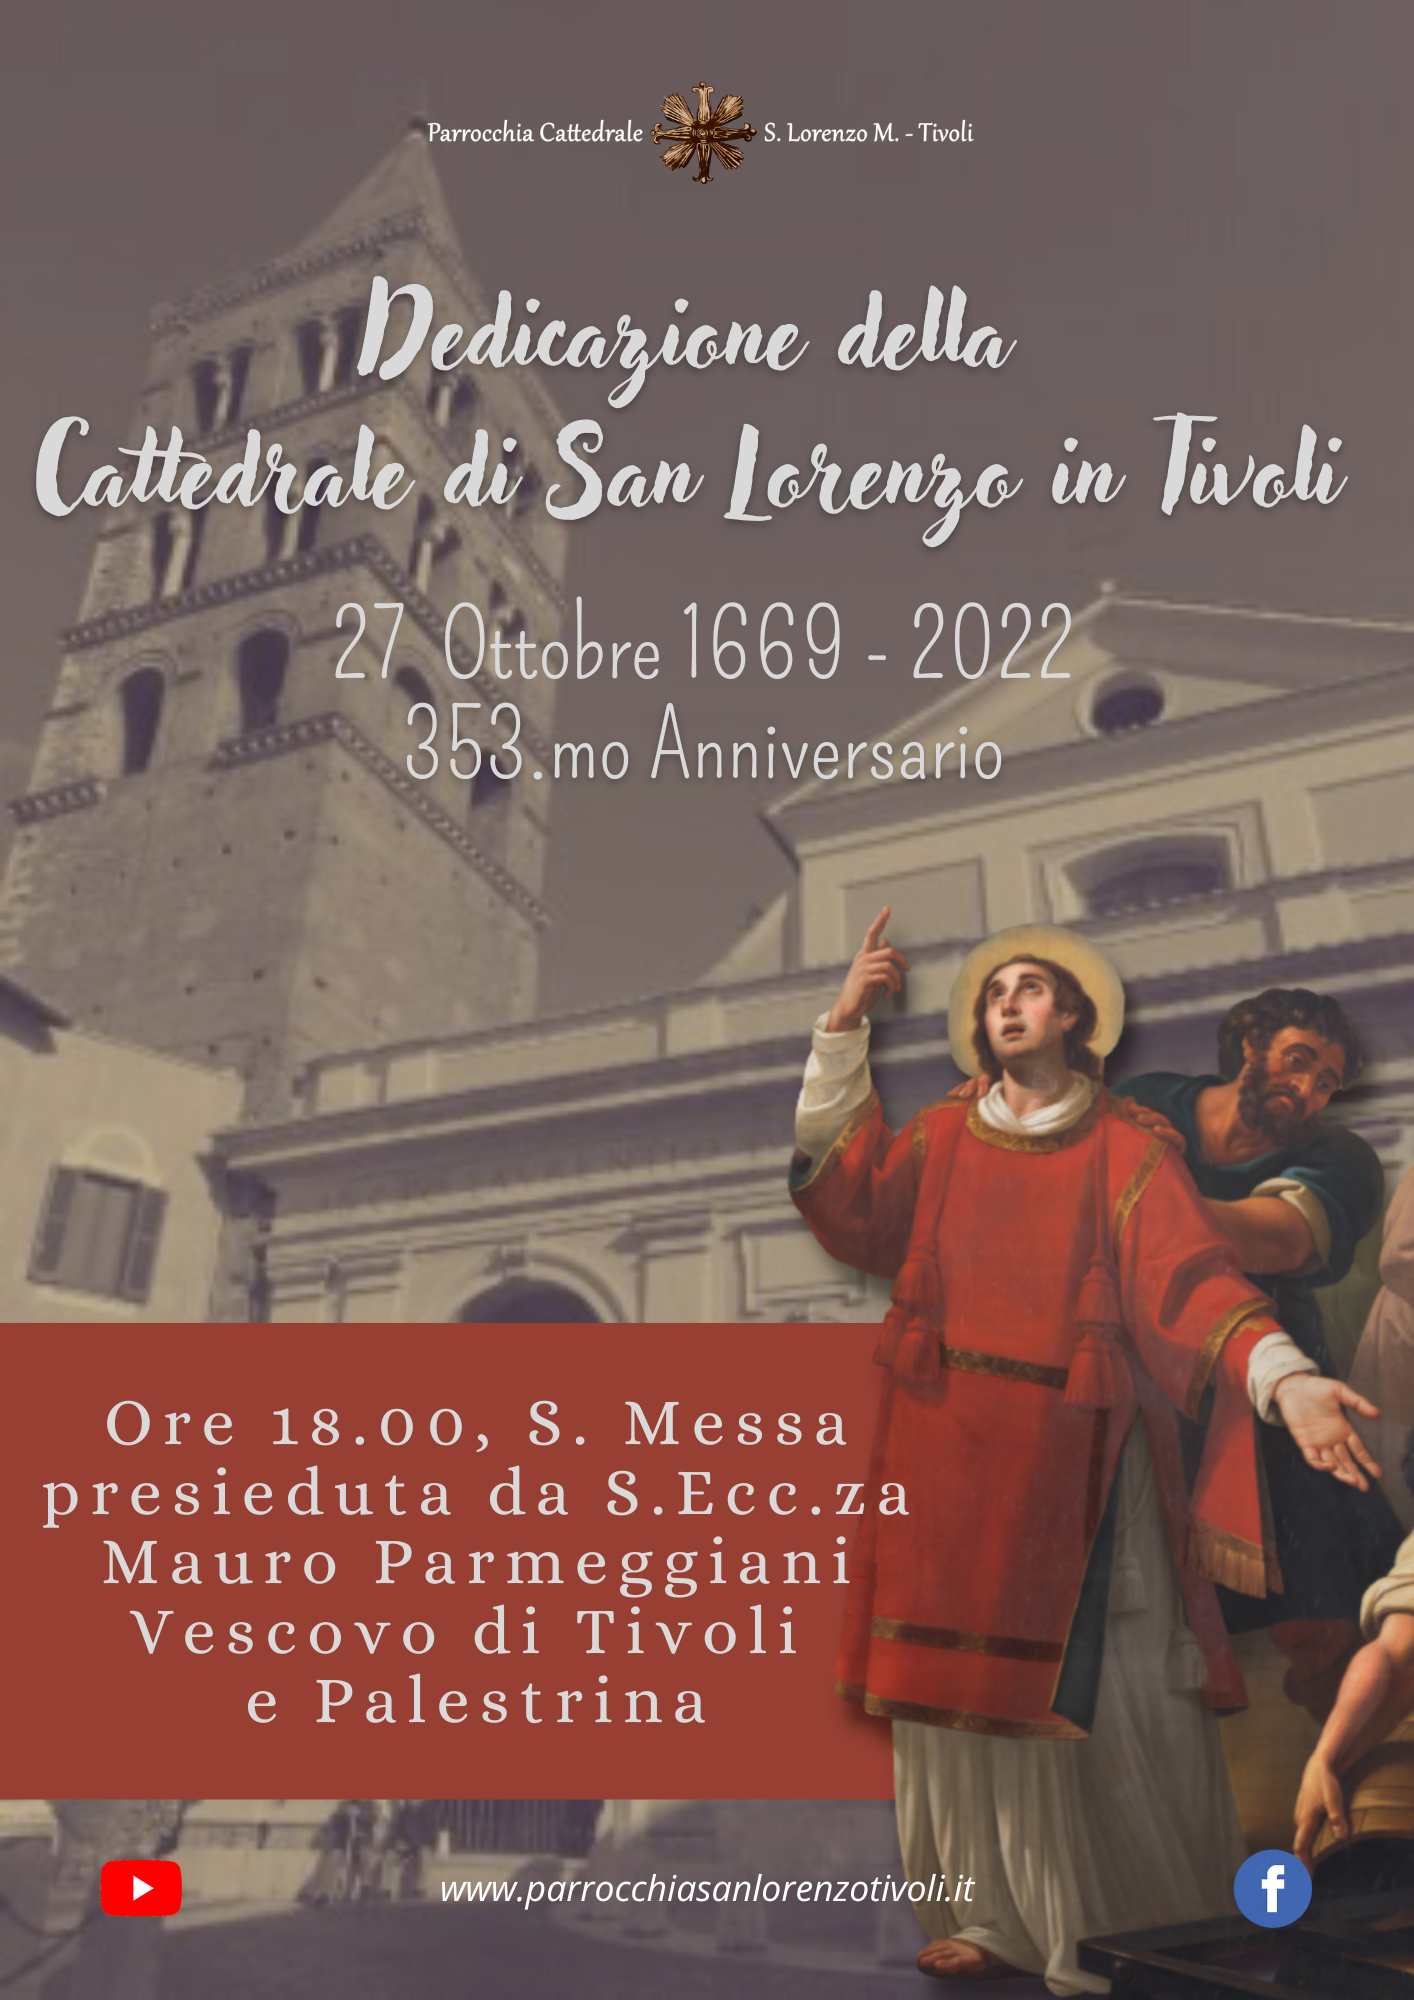 Dedicazione della Cattedrale. S. Messa con il Vescovo il 27 ottobre alle 18.00